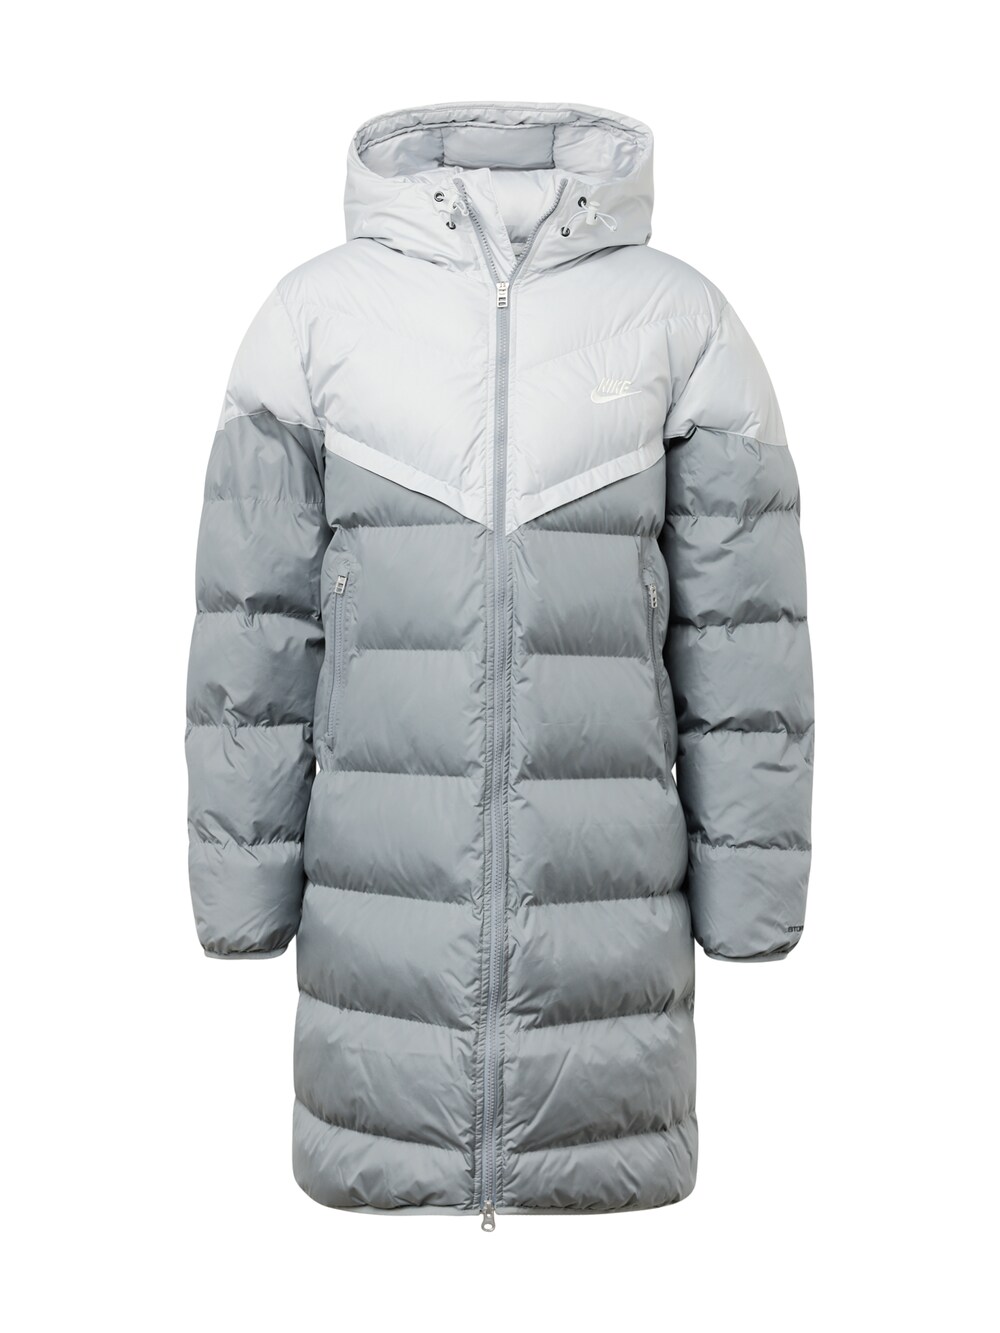 Межсезонное пальто Nike Sportswear, дымчато-серый/светло-серый пуховик nike hooded серый светло серый